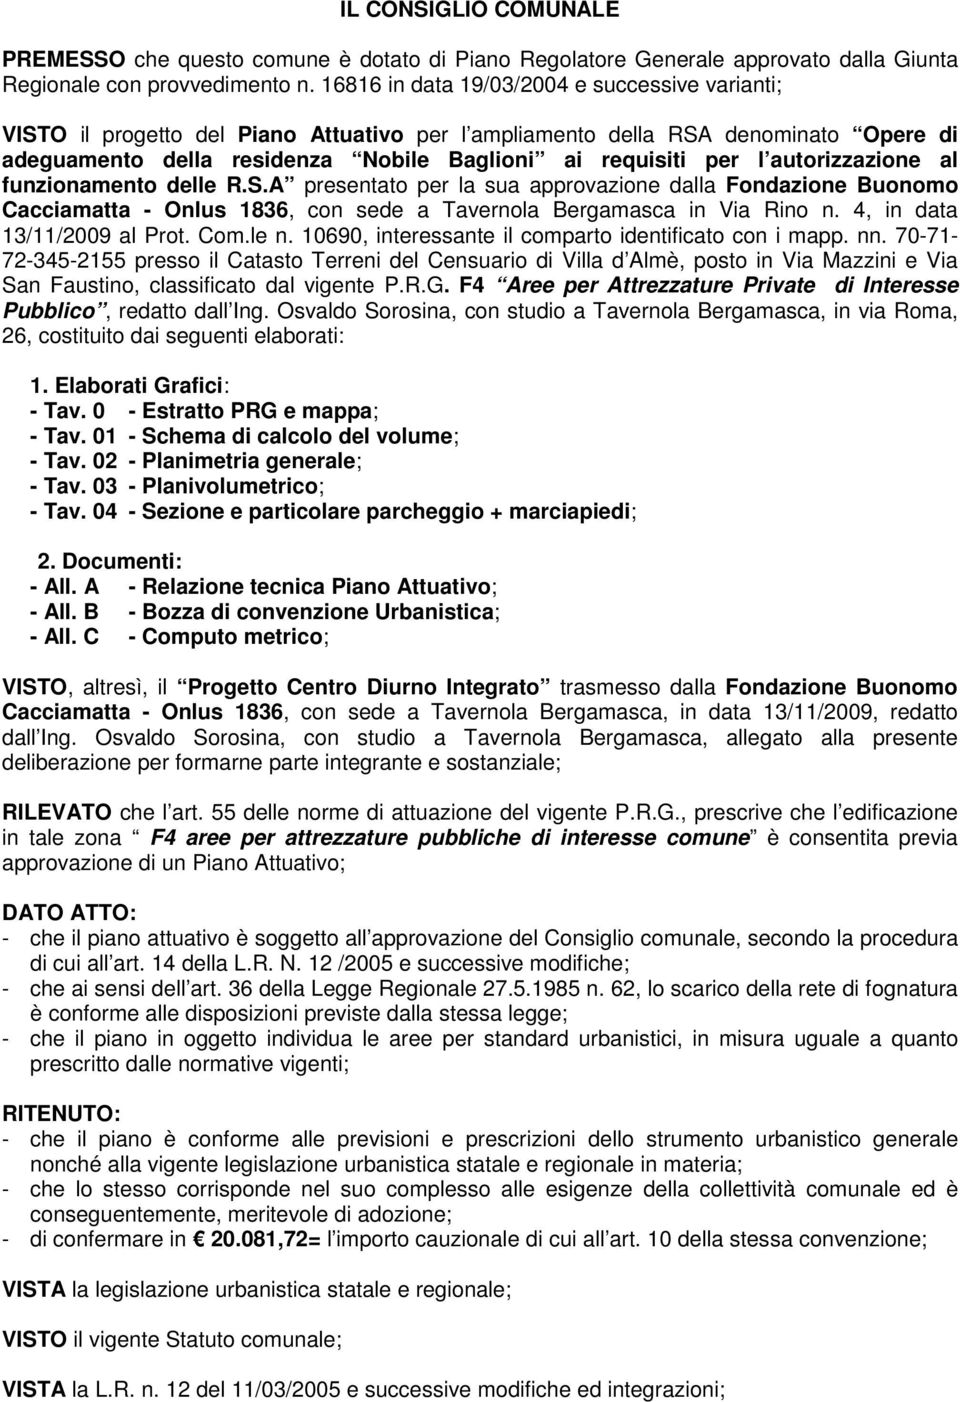 autorizzazione al funzionamento delle R.S.A presentato per la sua approvazione dalla Fondazione Buonomo Cacciamatta - Onlus 1836, con sede a Tavernola Bergamasca in Via Rino n.